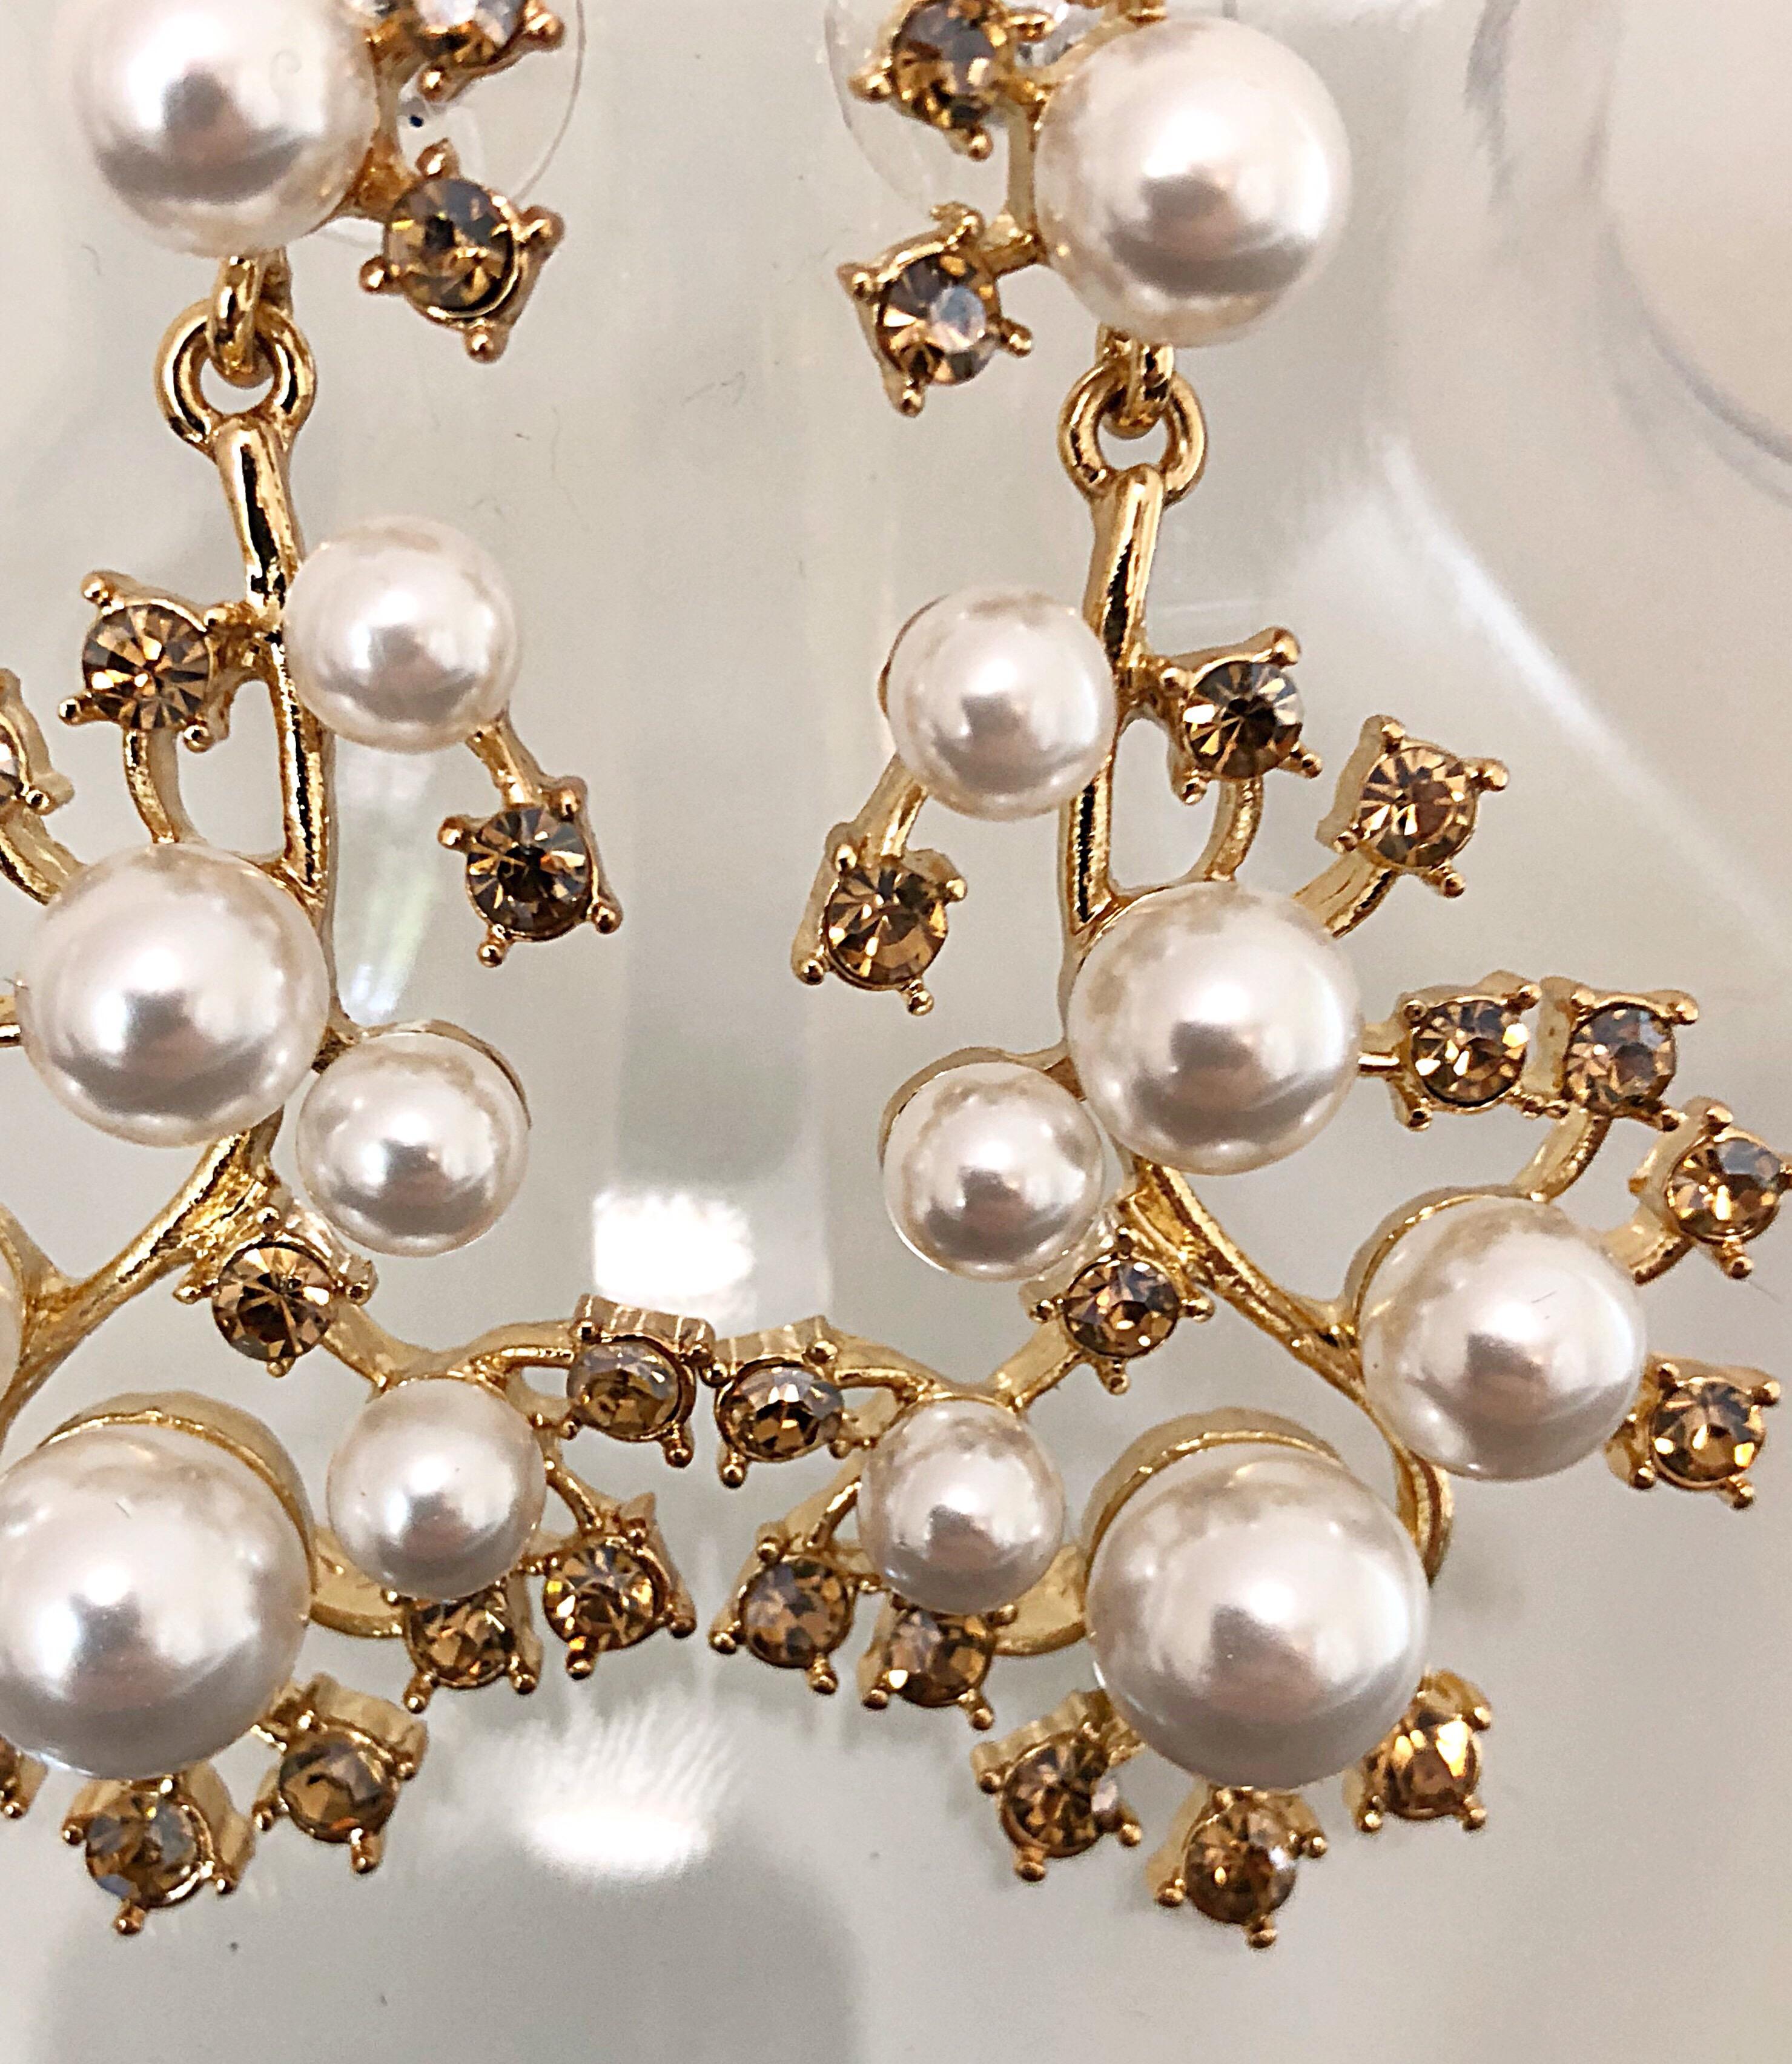 Magnifiques boucles d'oreilles vintage neuves en forme de grand chandelier OSCAR DE LA RENTA en or, perles et strass ! Chaque boucle d'oreille est ornée de sept perles blanches de différentes formes et de 15 strass dorés. Dos percé, et pas lourd.